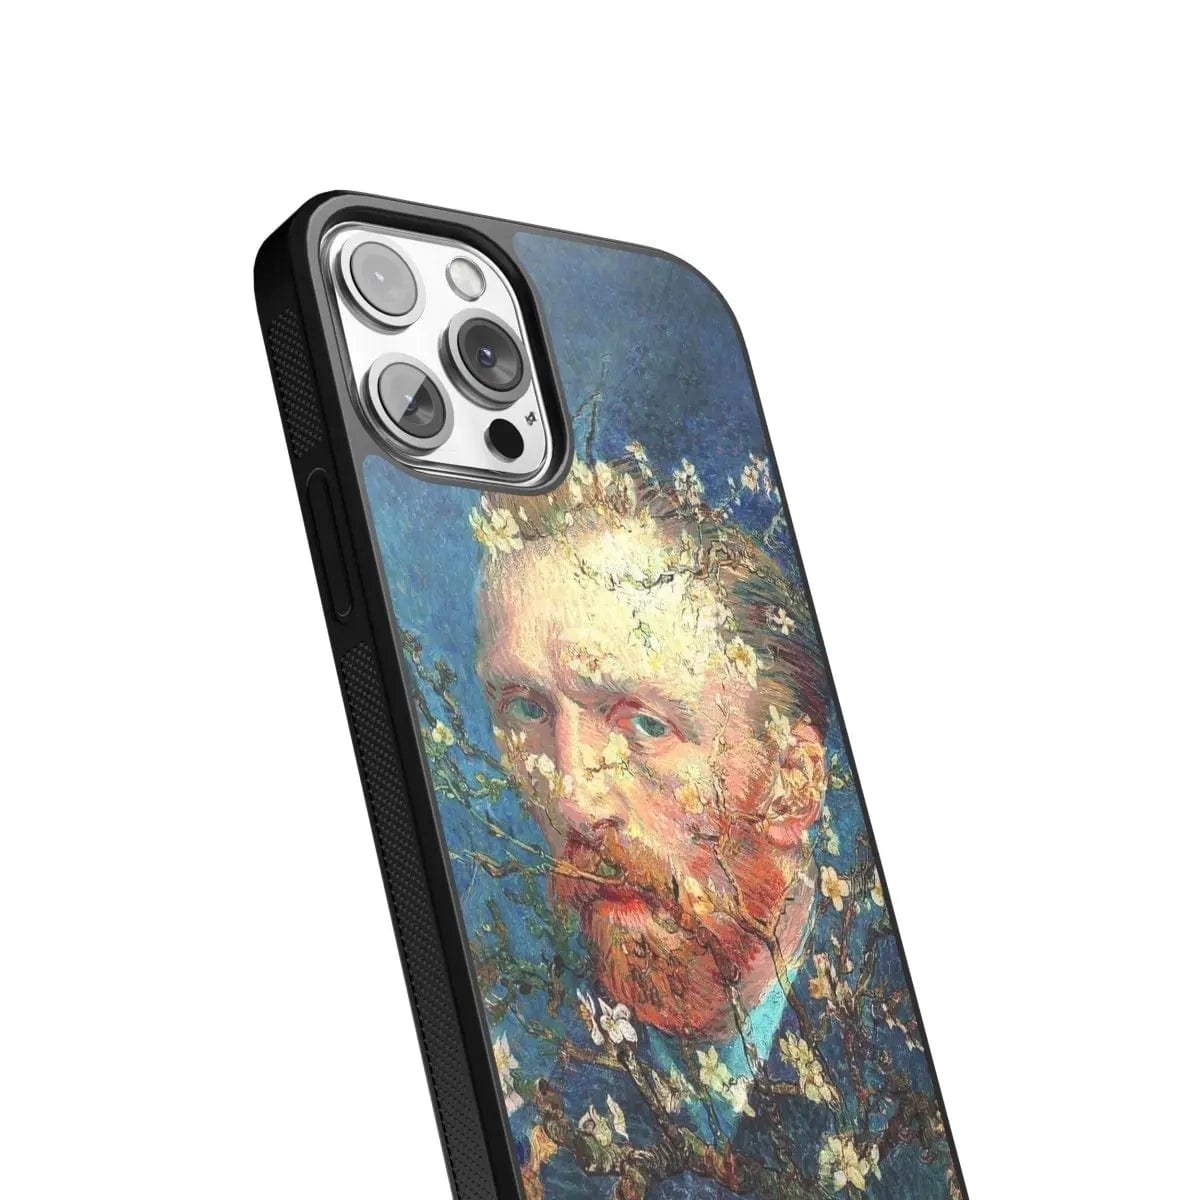 Phone case "Van Gogh in flowers" - Artcase